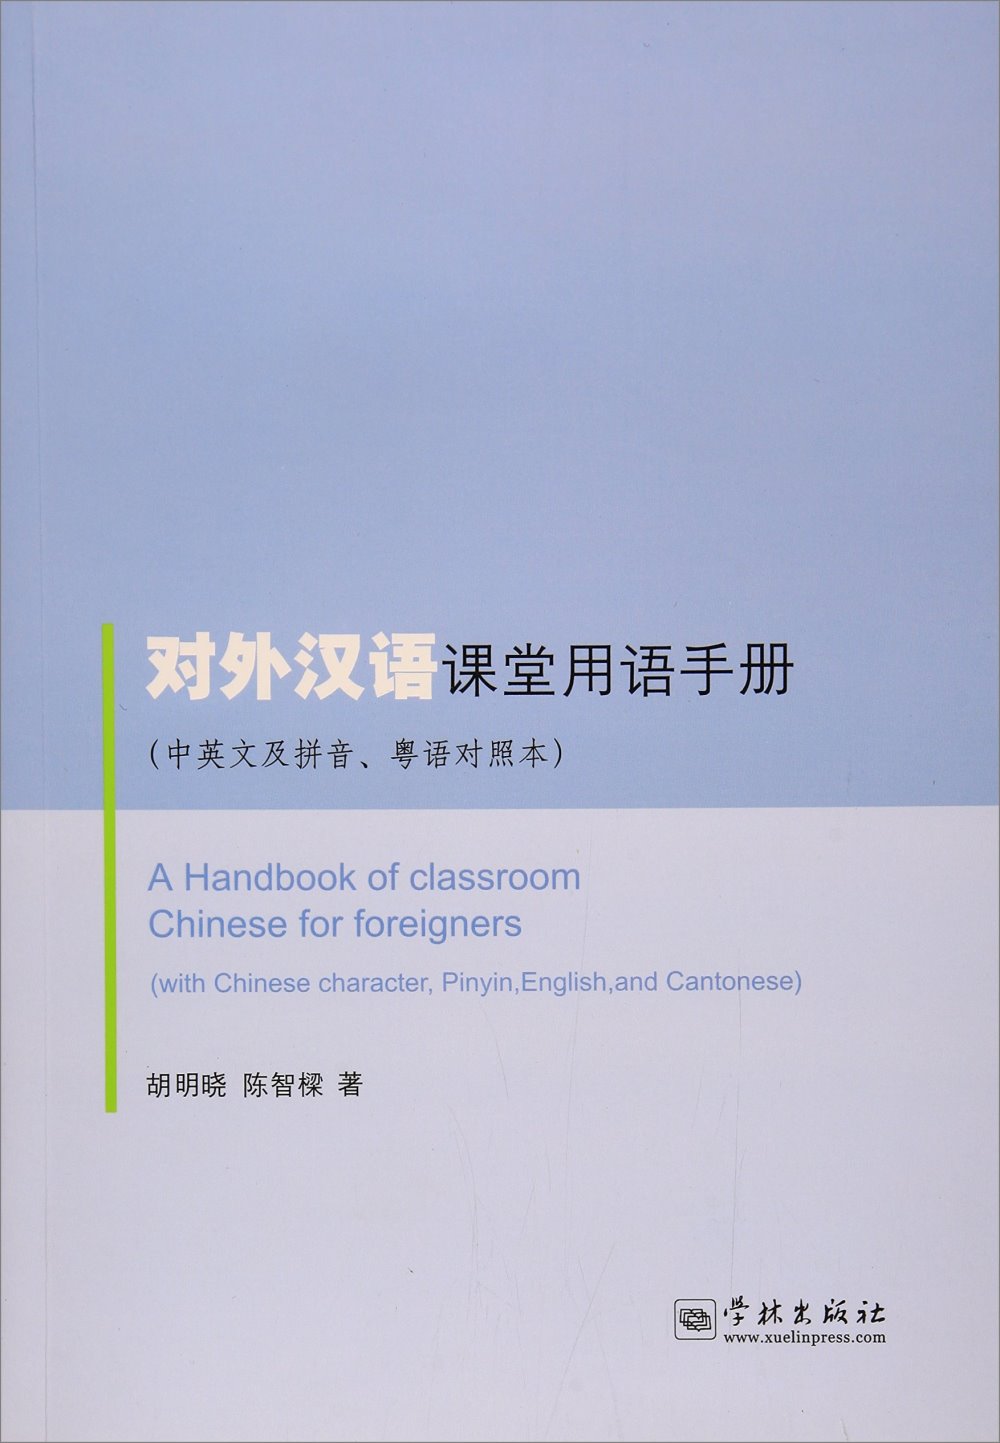 對外漢語課堂用語手冊（中英文及拼音、粵語對照本）